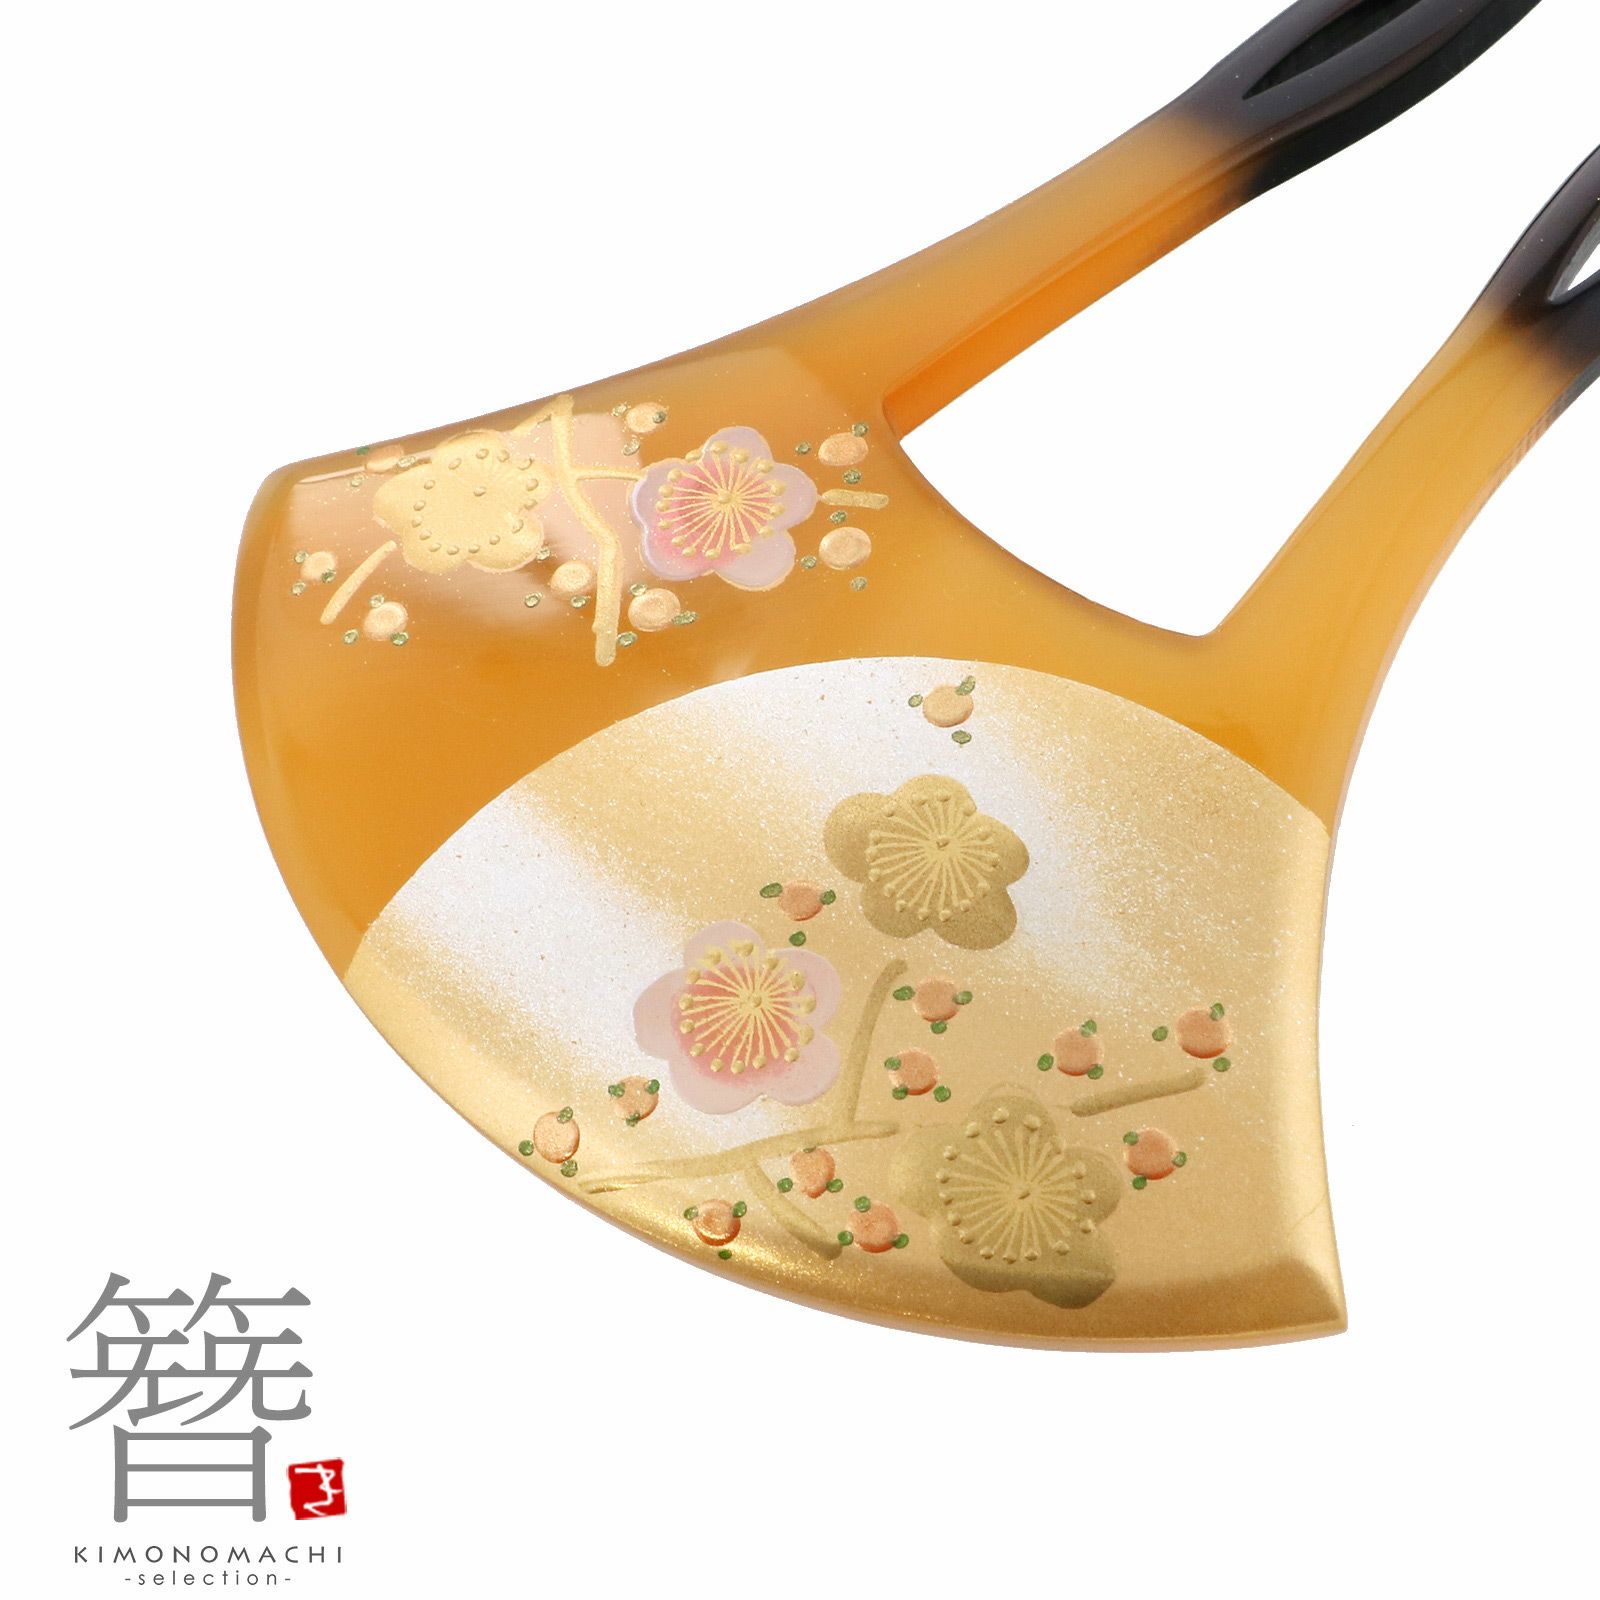 かんざし バチ型 日本製 「べっ甲調 月に梅 S19-008D」 銀杏型 高級 簪